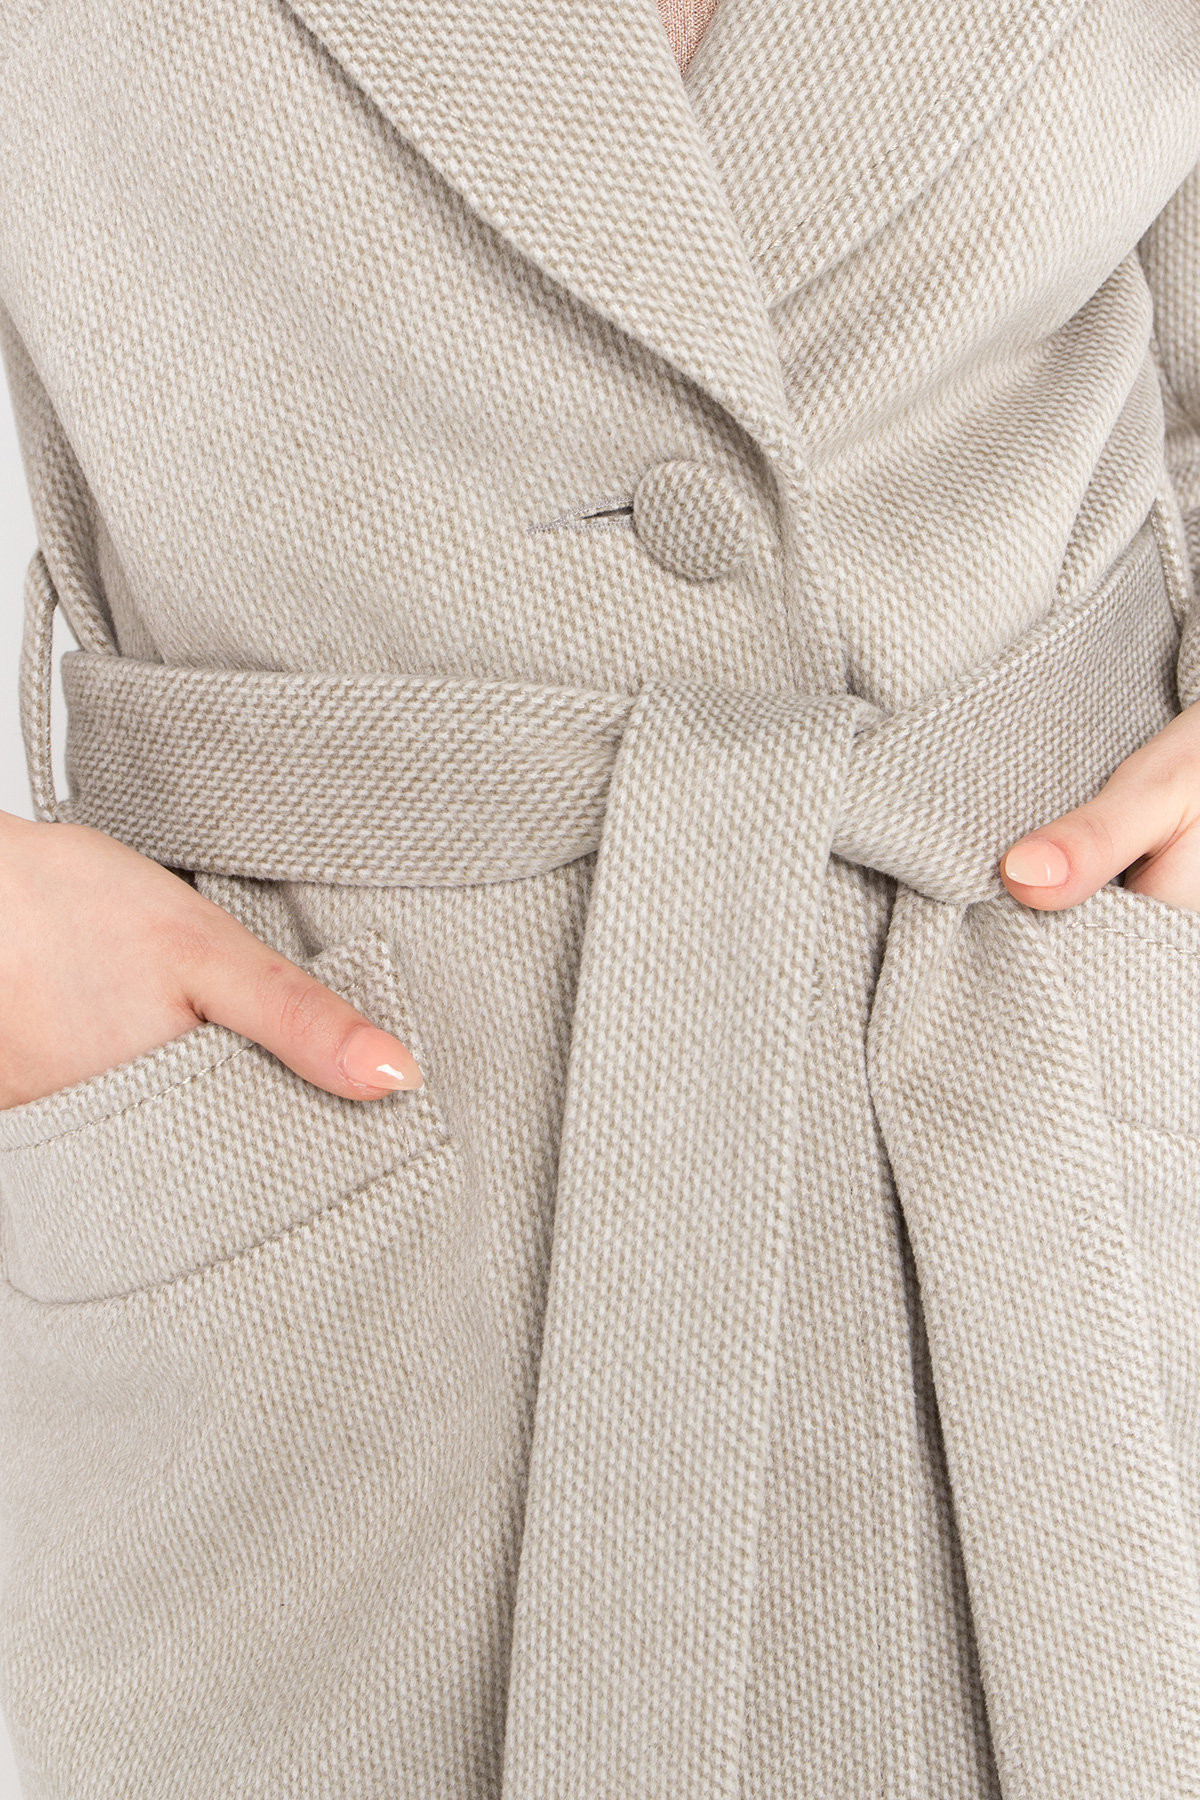 Кашемировое пальто Вейсона 8803 Цвет: Олива